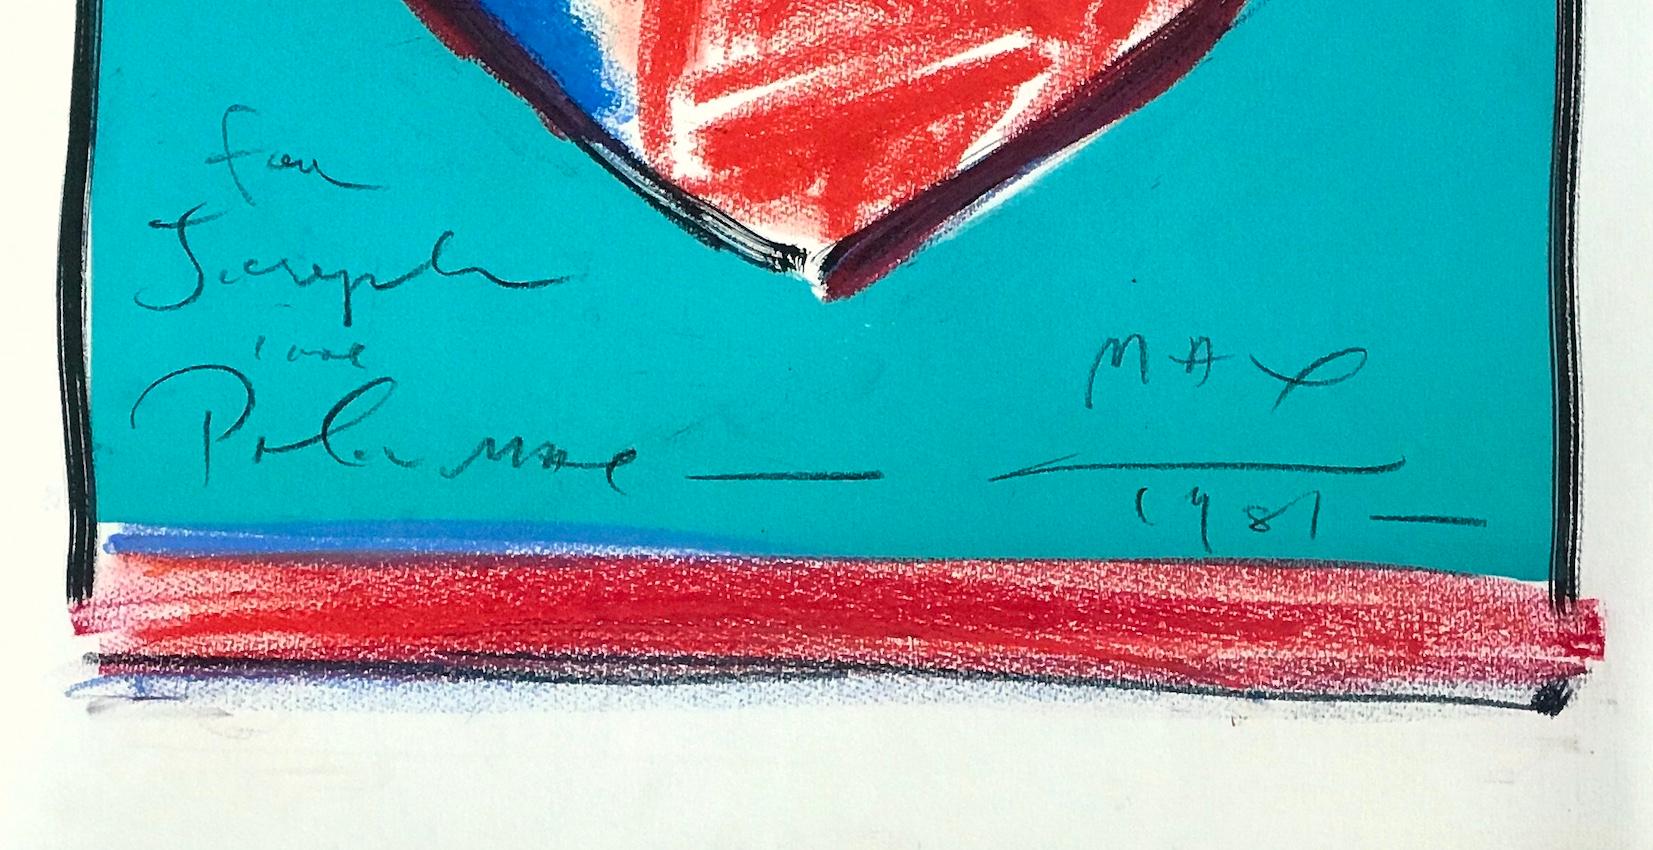 HEART II -  ist eine einzigartige, handkolorierte Lithografie der Ikone der Popkultur - Peter Max. Das Bild Herz II wurde 1981 als Lithographie in limitierter Auflage von 165 Exemplaren in traditioneller Handlithographietechnik auf Archivpapier